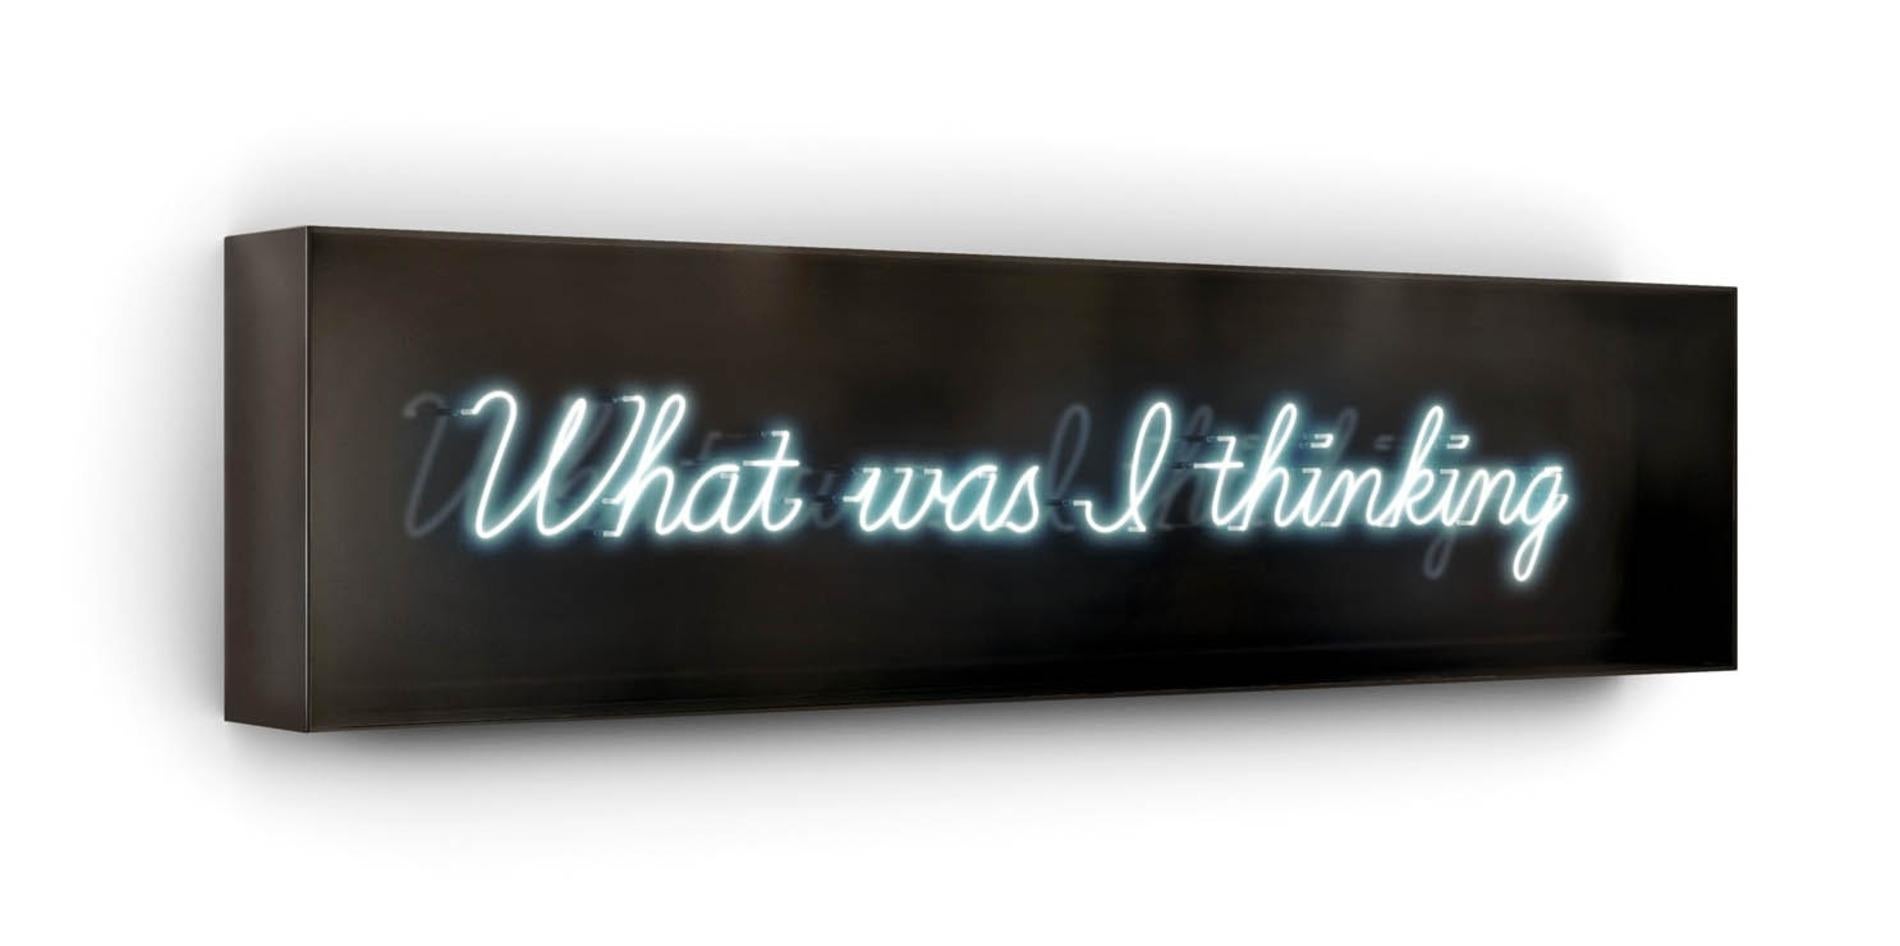 Serie: Neon
15" x 60" x 6" - Auflage von 9

David Drebins Neonlicht-Installationen sind entwaffnend unverblümt und sehr intim. Sie beleuchten die verborgenen Wünsche und Gedanken der Femmes fatales, die in der schwer fassbaren Welt seiner ikonischen